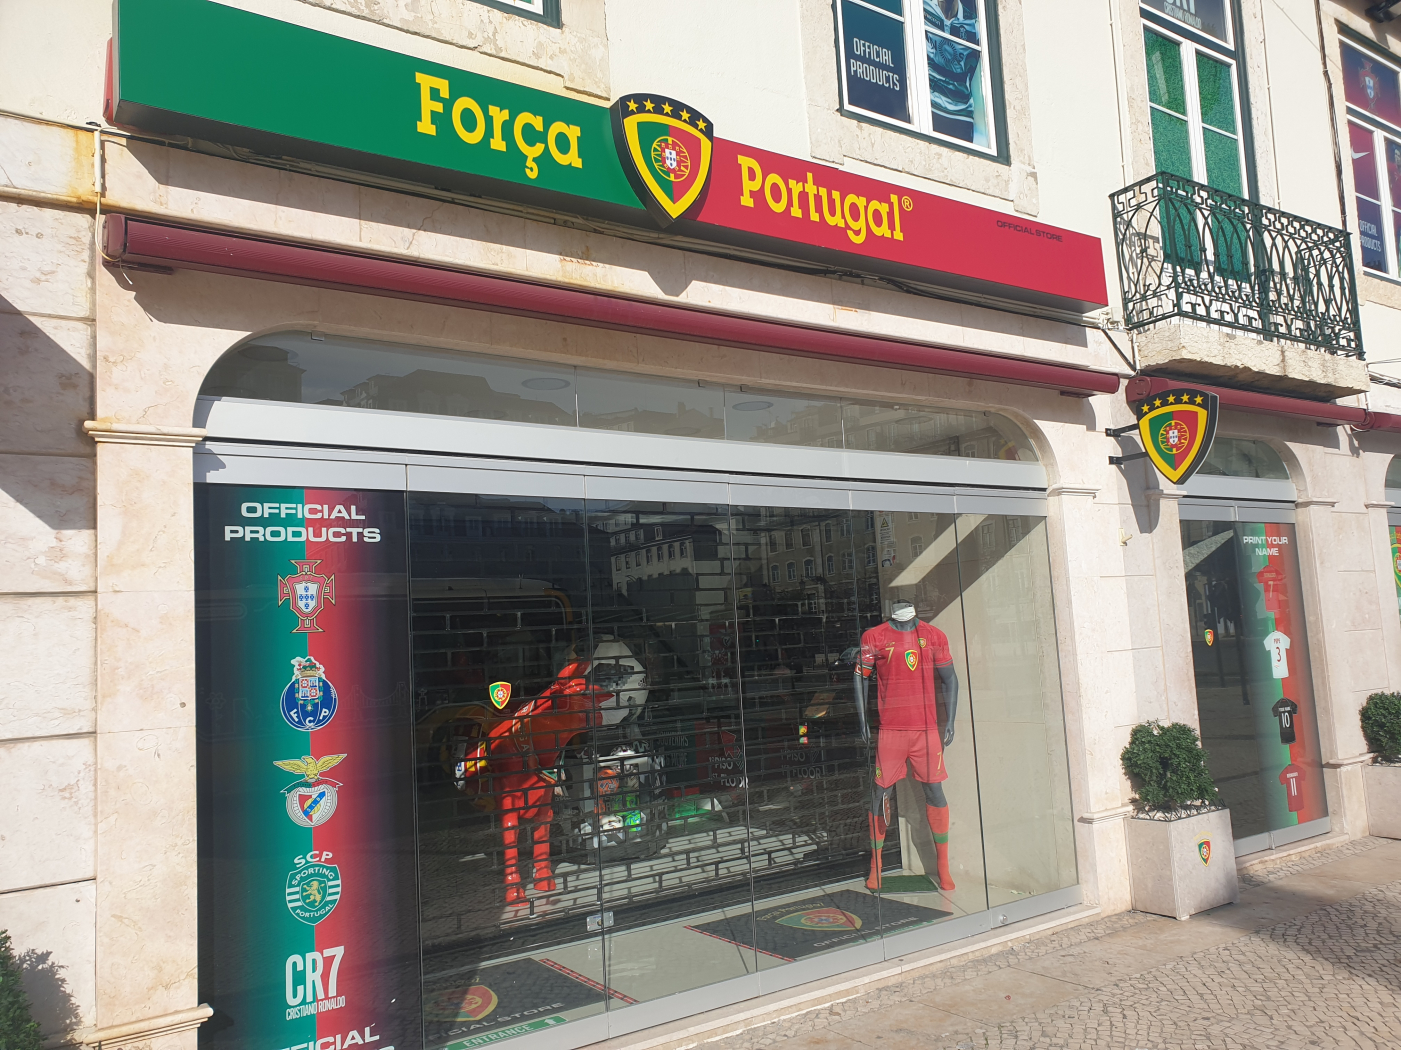 20201225_133446.jpg : 포르투갈은 그냥 호날두네요